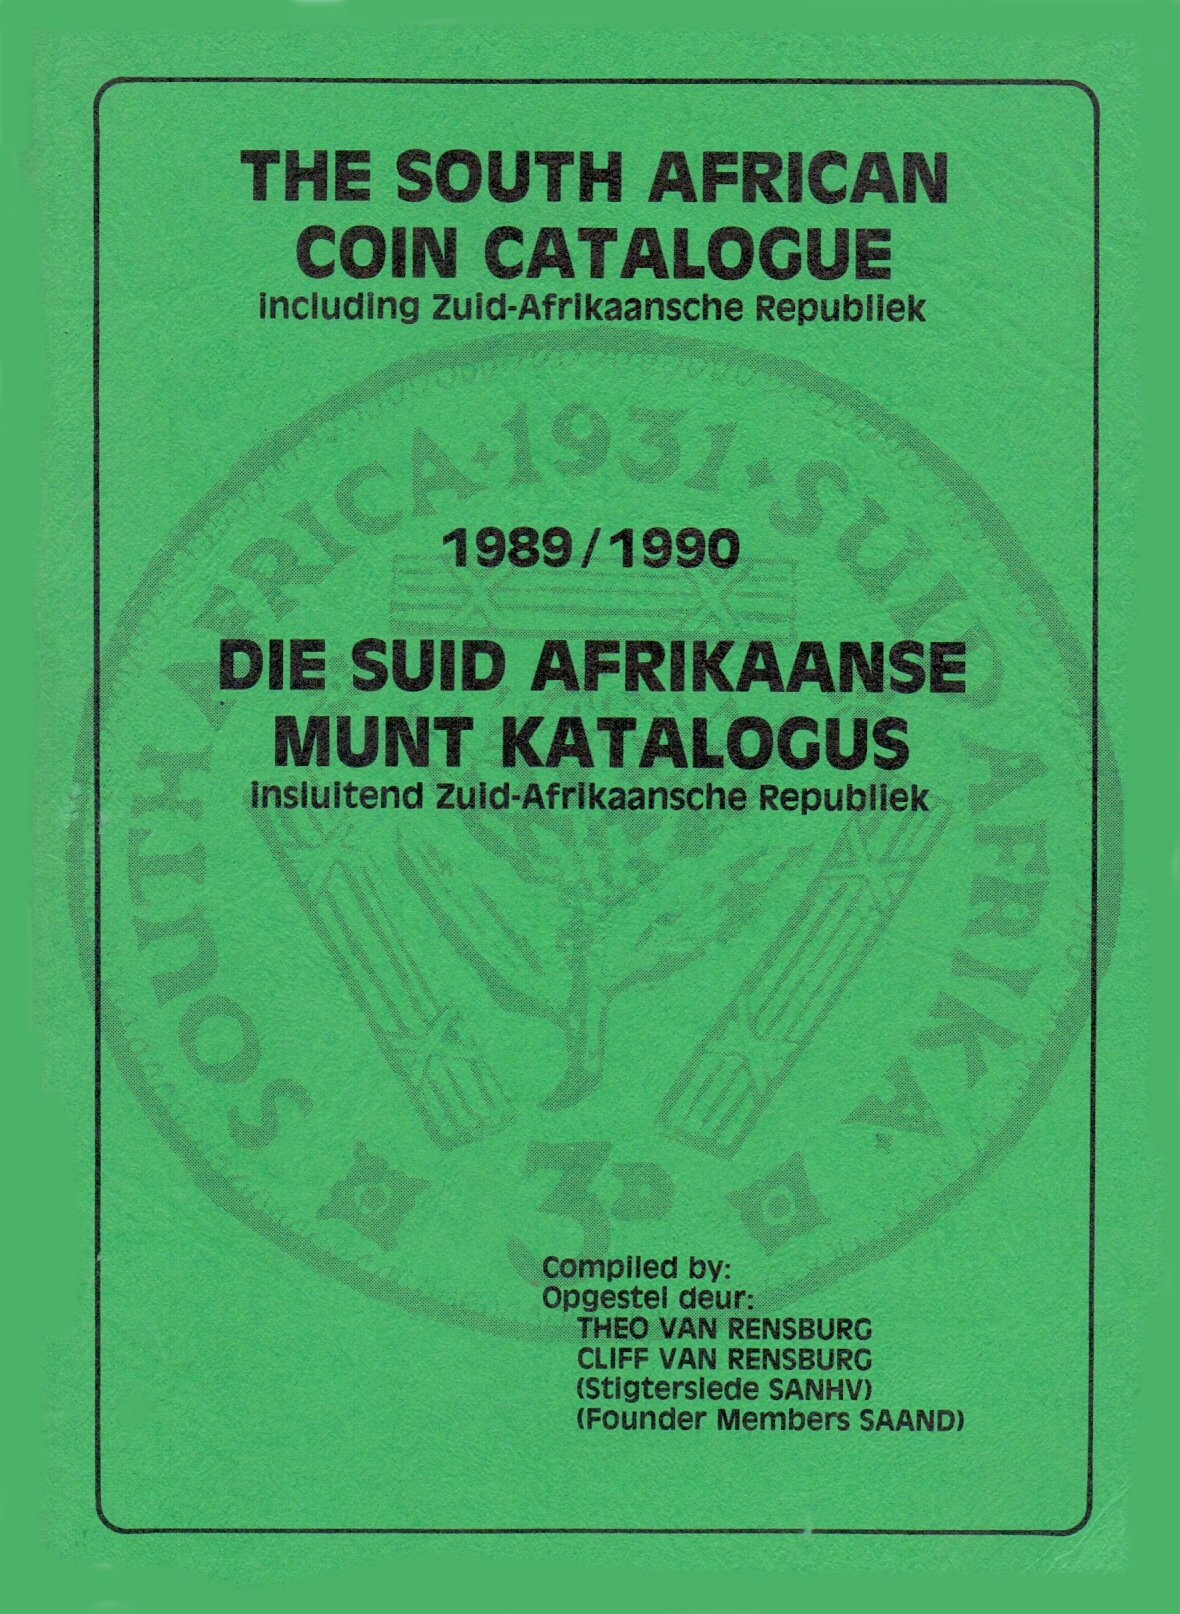 Randburg Coin Catalogue 1989 to 1990